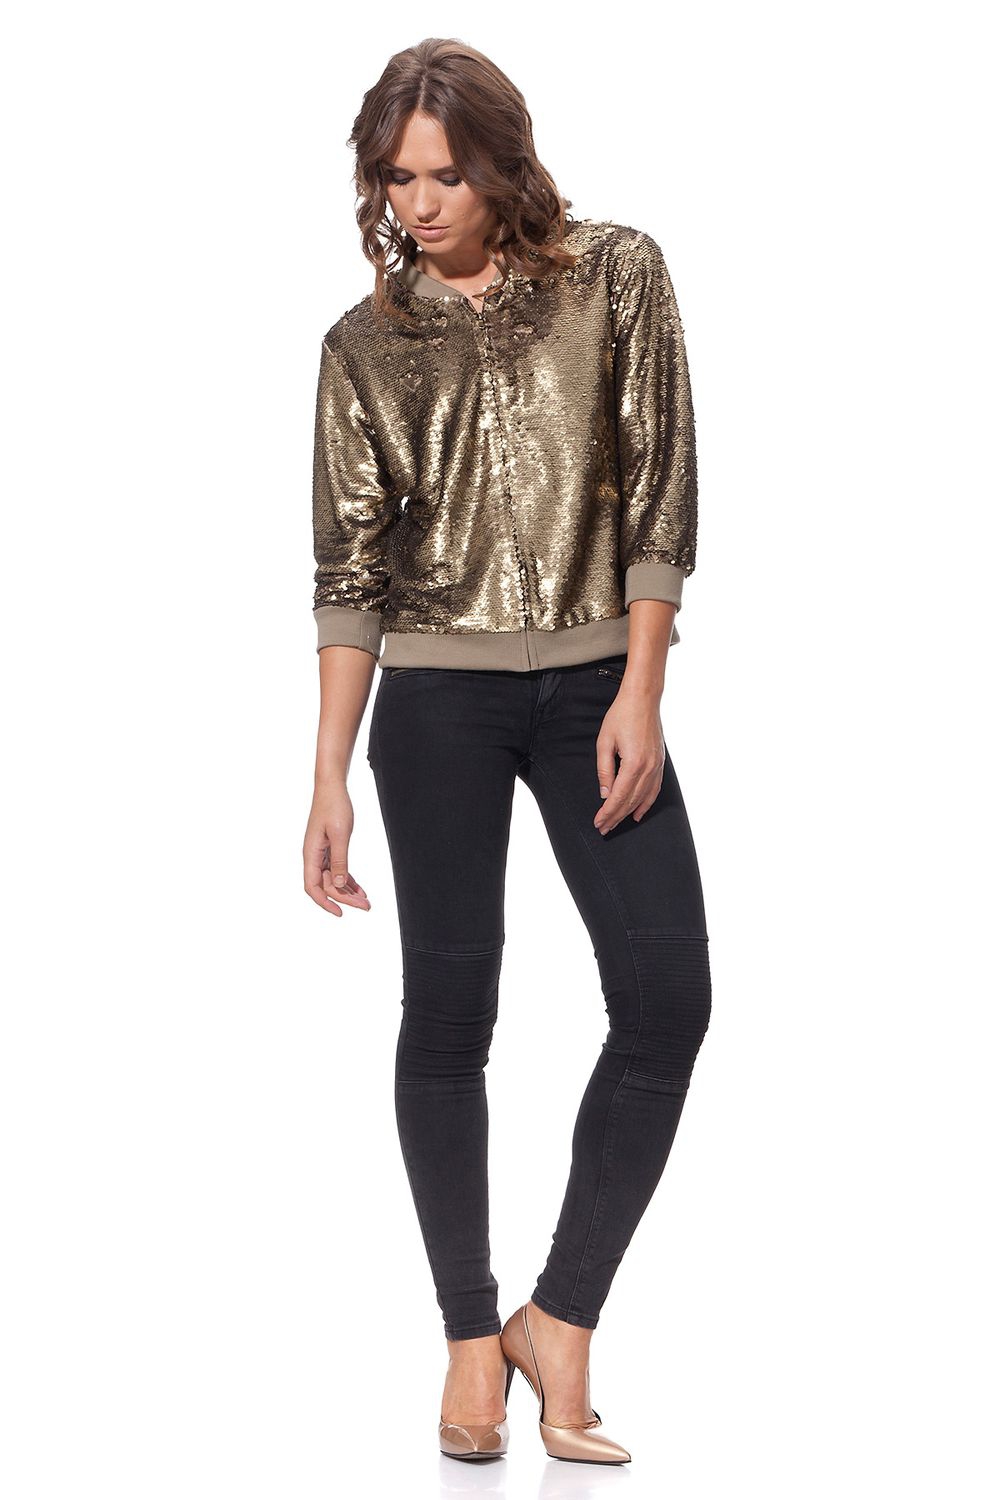 Късо дамско яке с пайети в златист цвят от Label eight | Secretzone.bg